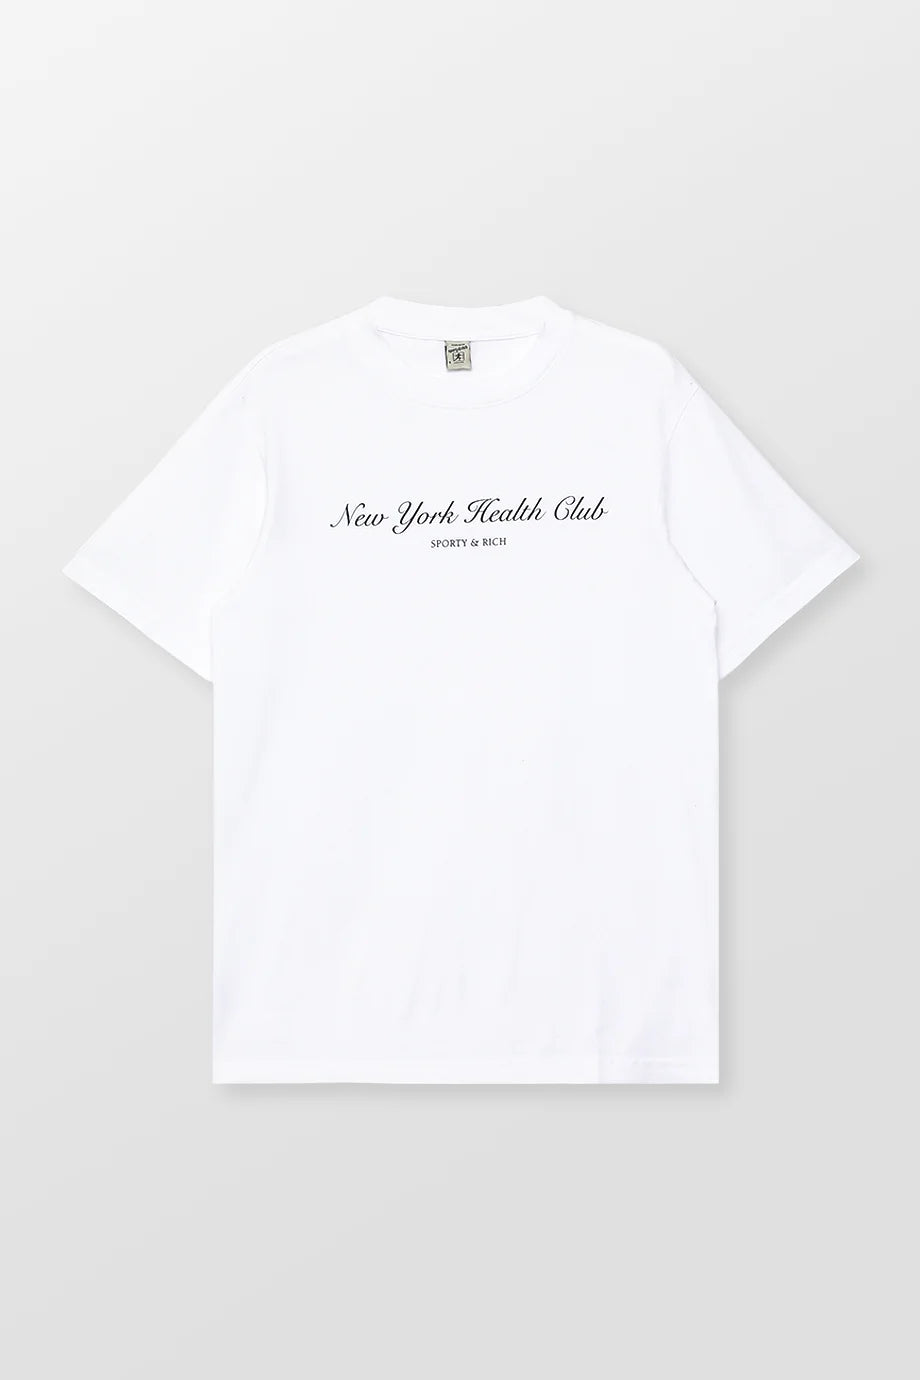 NY Health Club T-Shirt